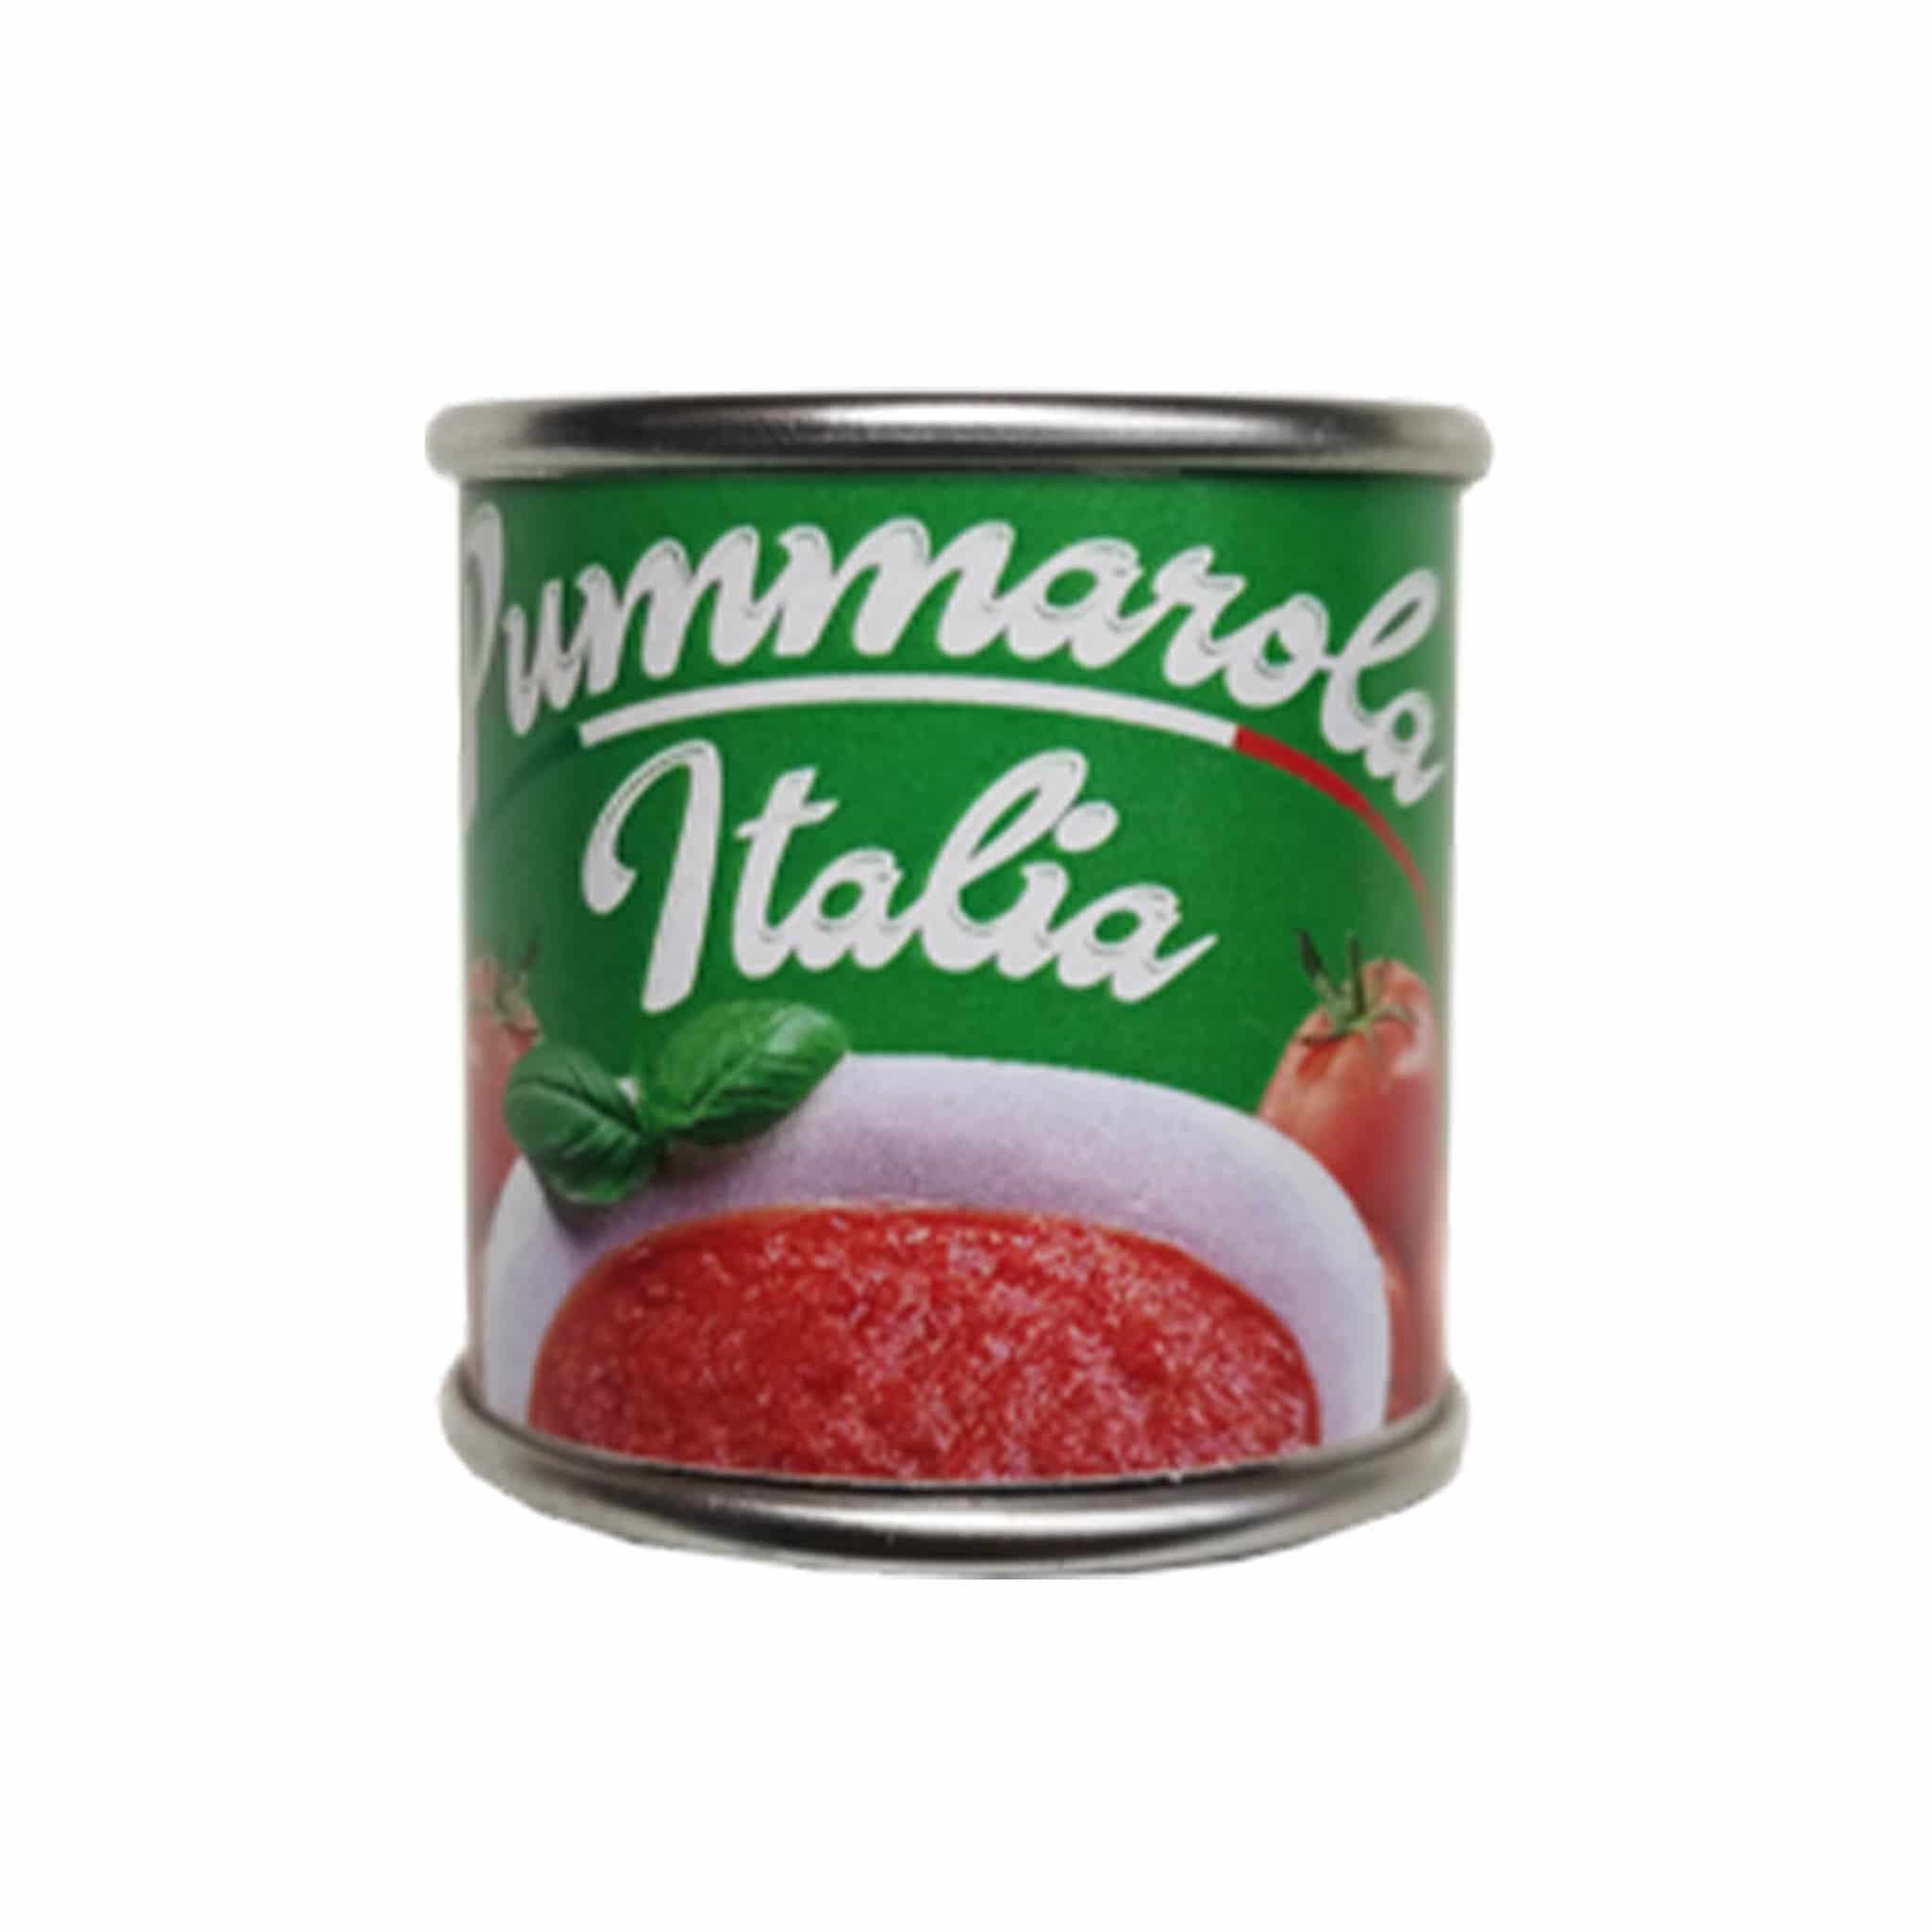 Pummarola Italian Tomatoes Food Magnet